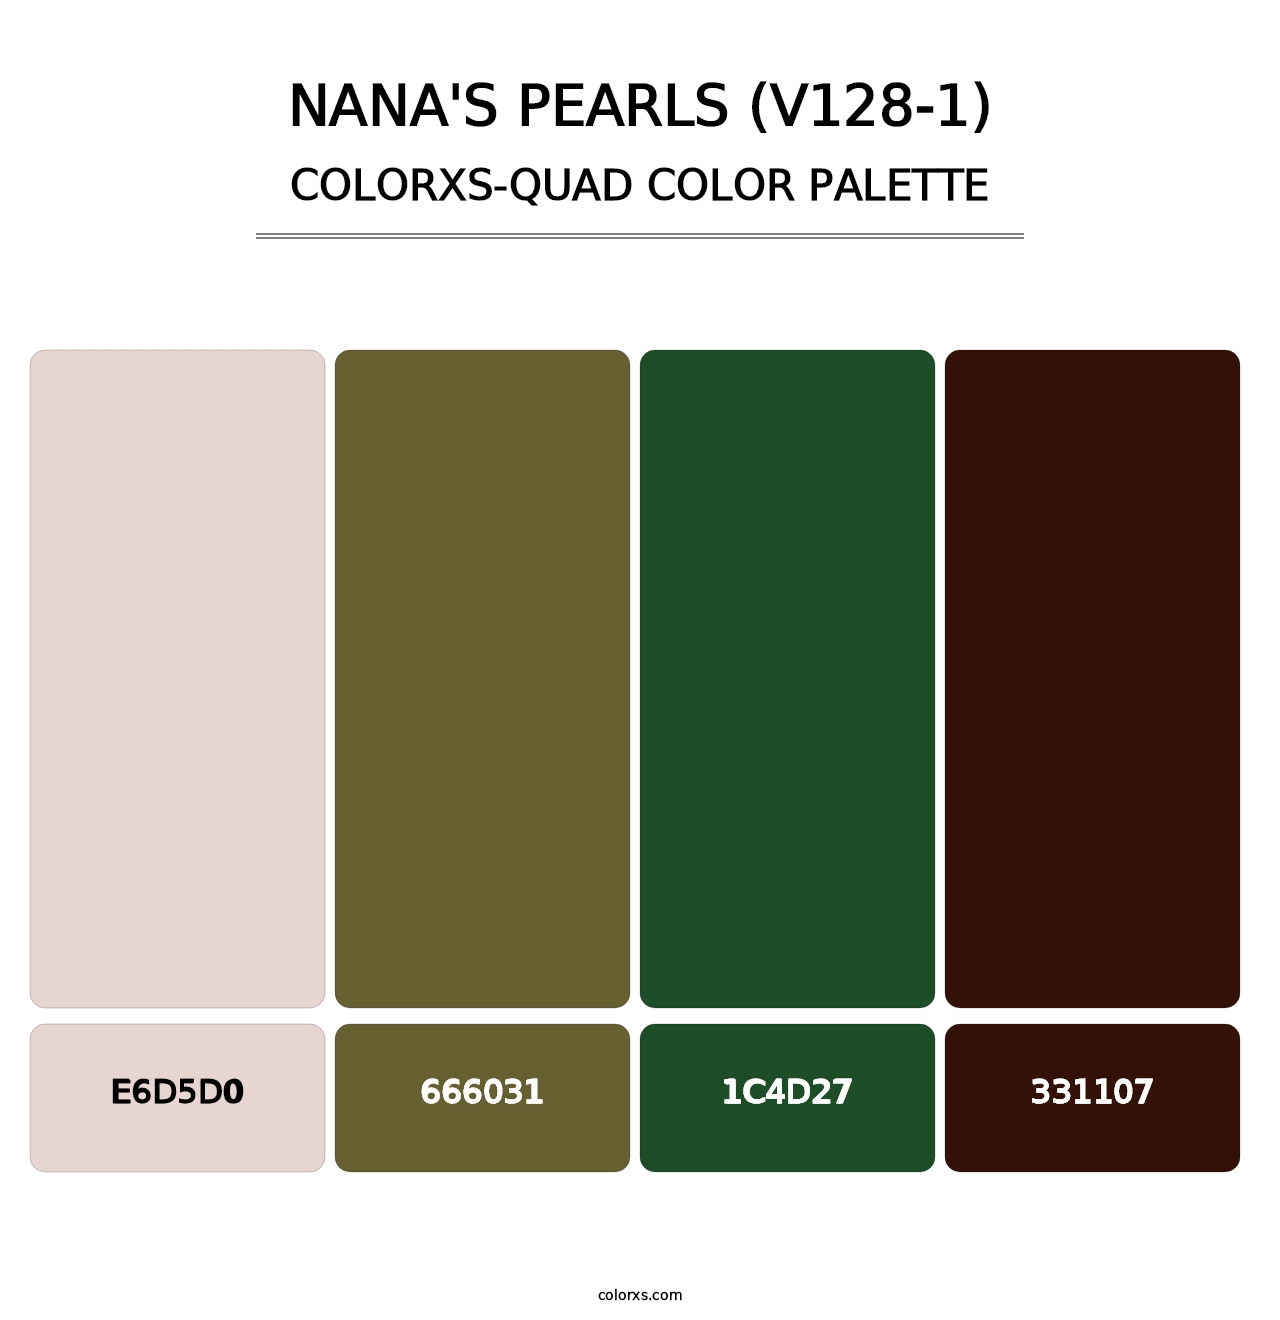 Nana's Pearls (V128-1) - Colorxs Quad Palette